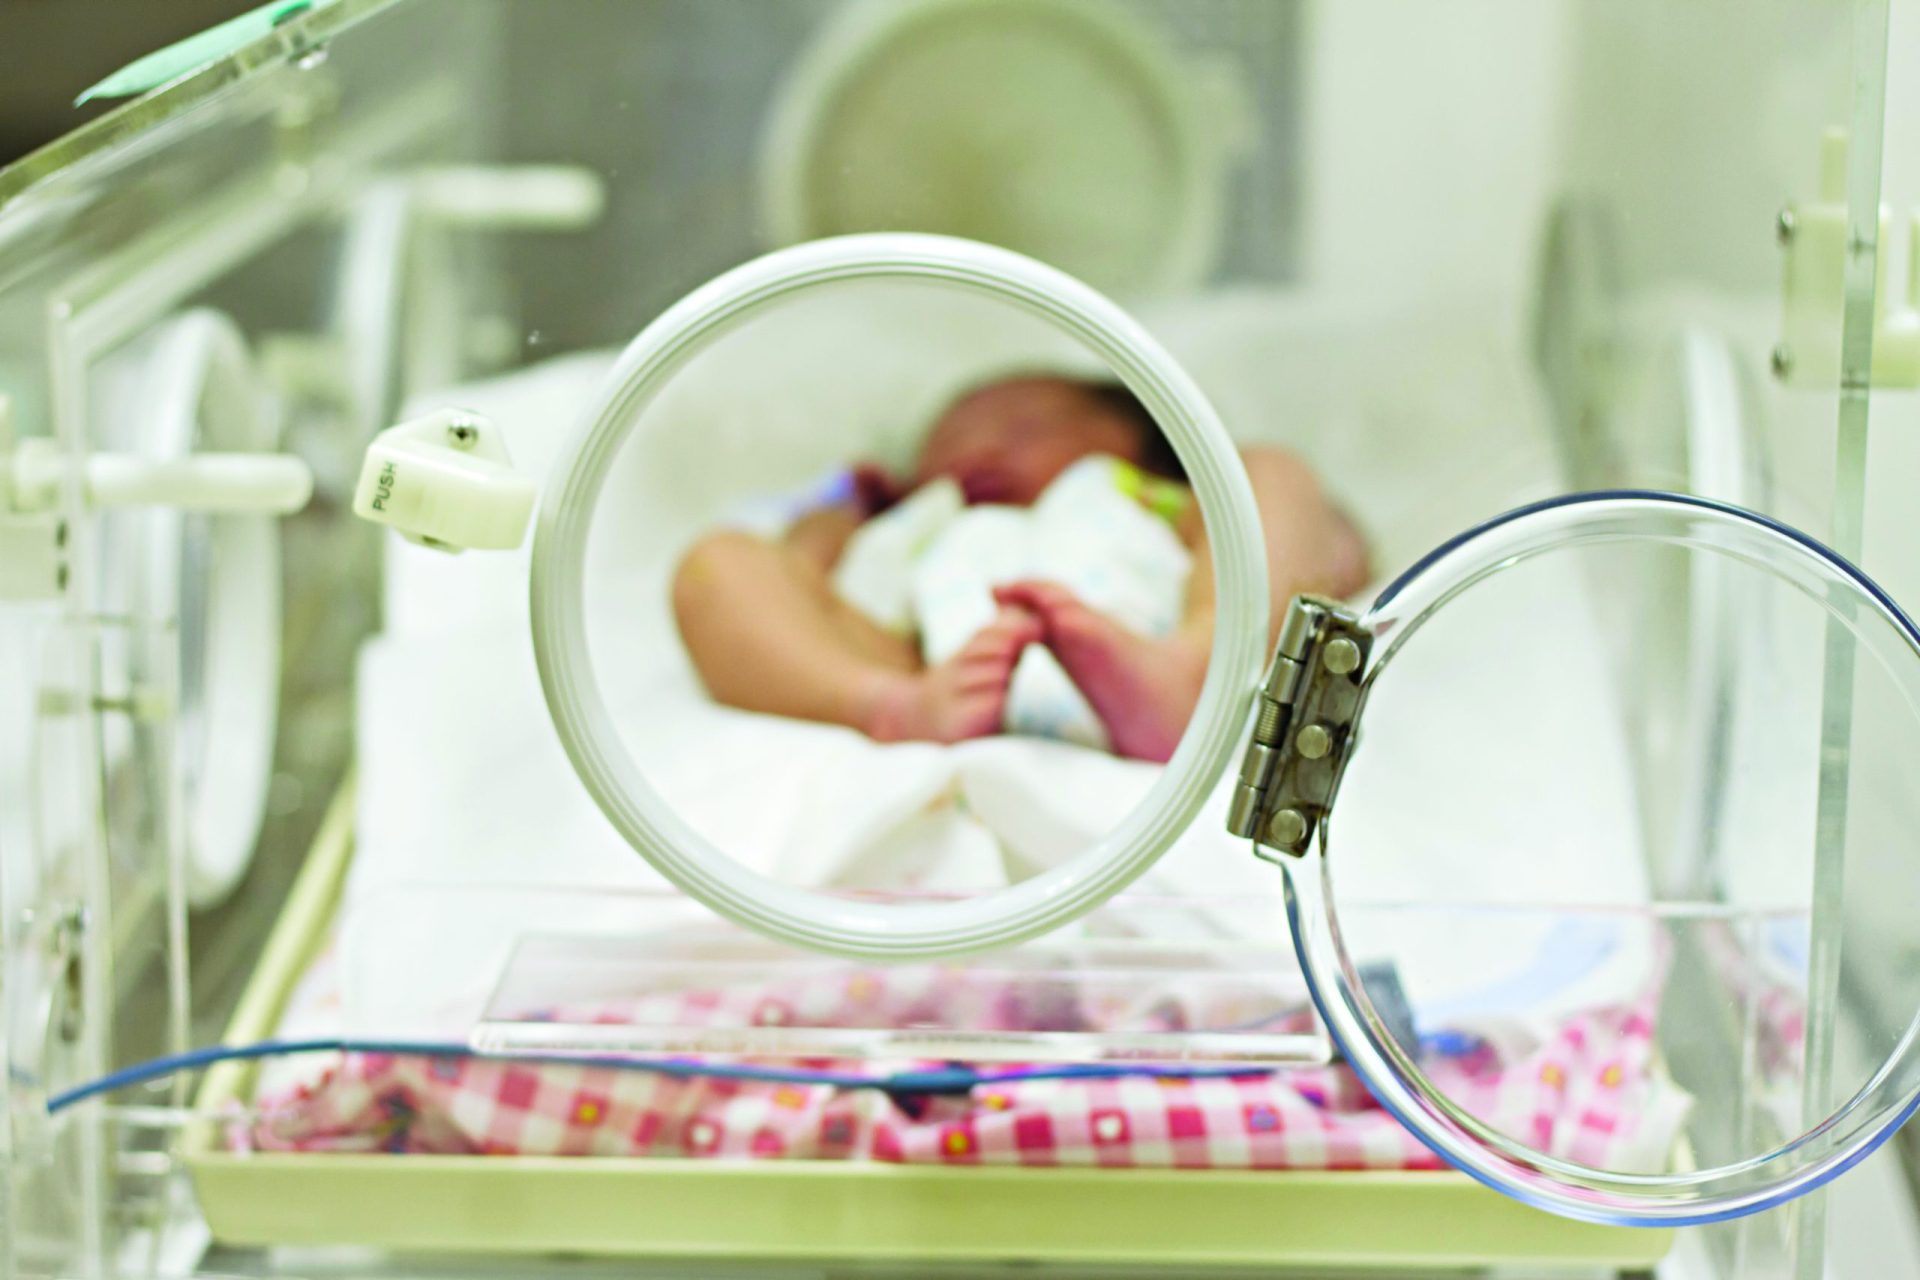 Nasceu mais uma bebé de uma mãe infetada com coronavírus em Portugal